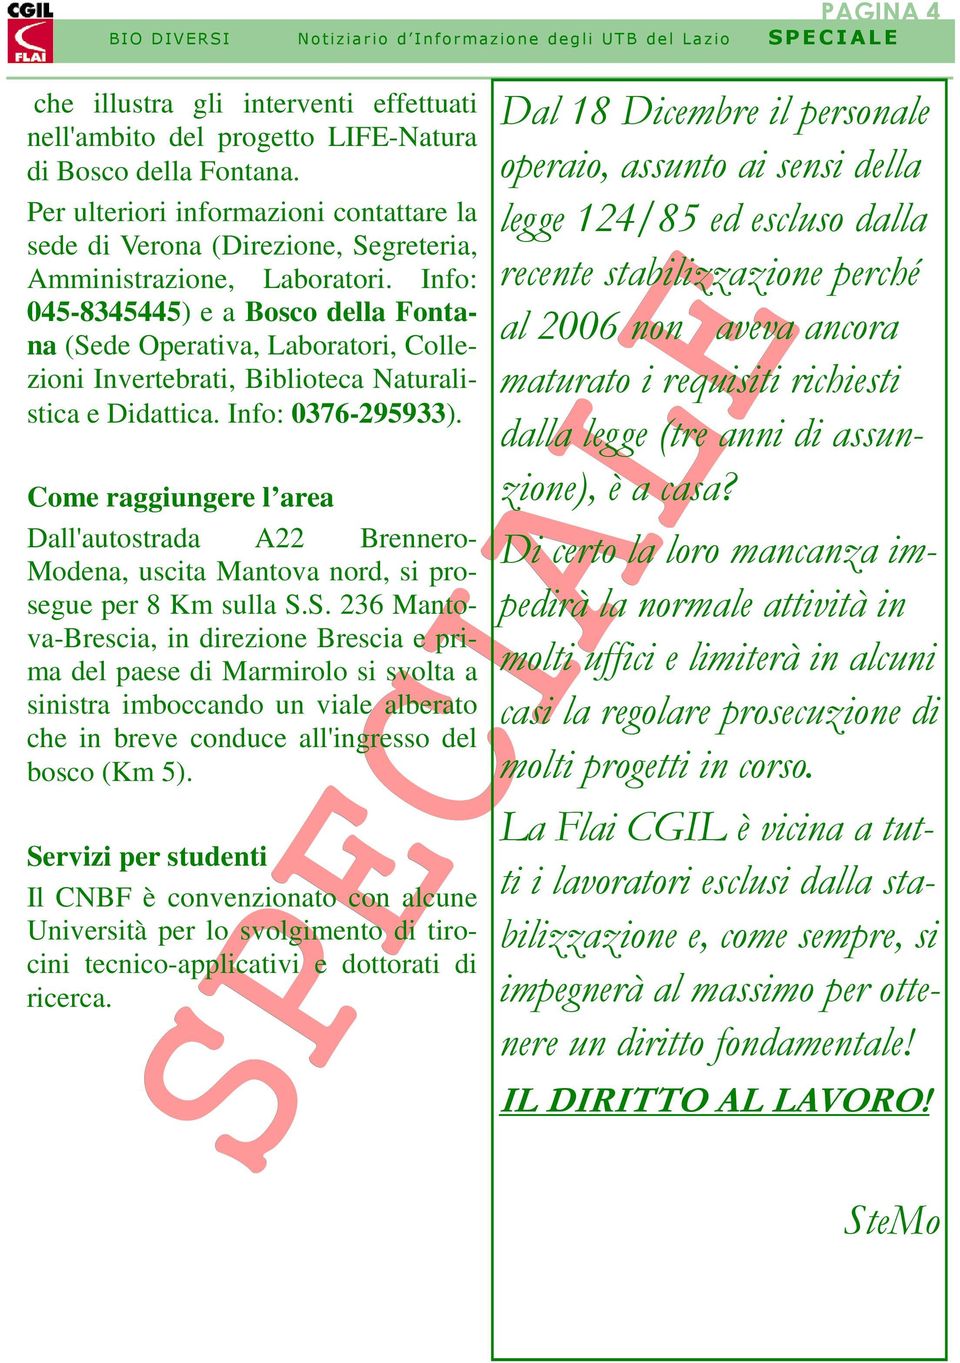 Info: 045-8345445) e a Bosco della Fontana (Sede Operativa, Laboratori, Collezioni Invertebrati, Biblioteca Naturalistica e Didattica. Info: 0376-295933).